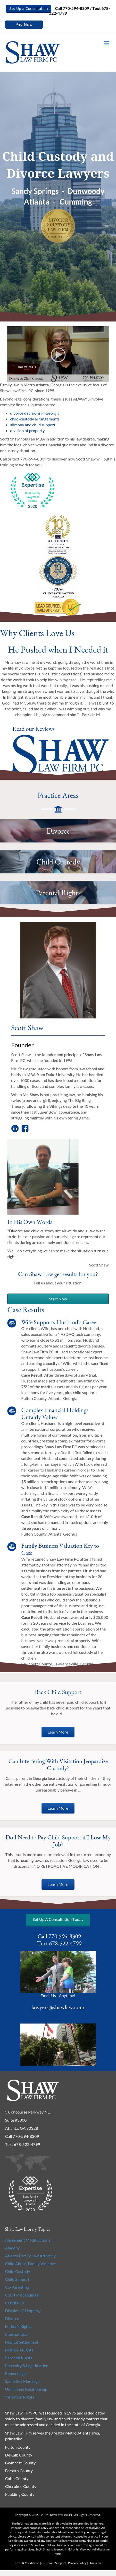 Shaw Law Firm, LLC - Atlanta GA Lawyers